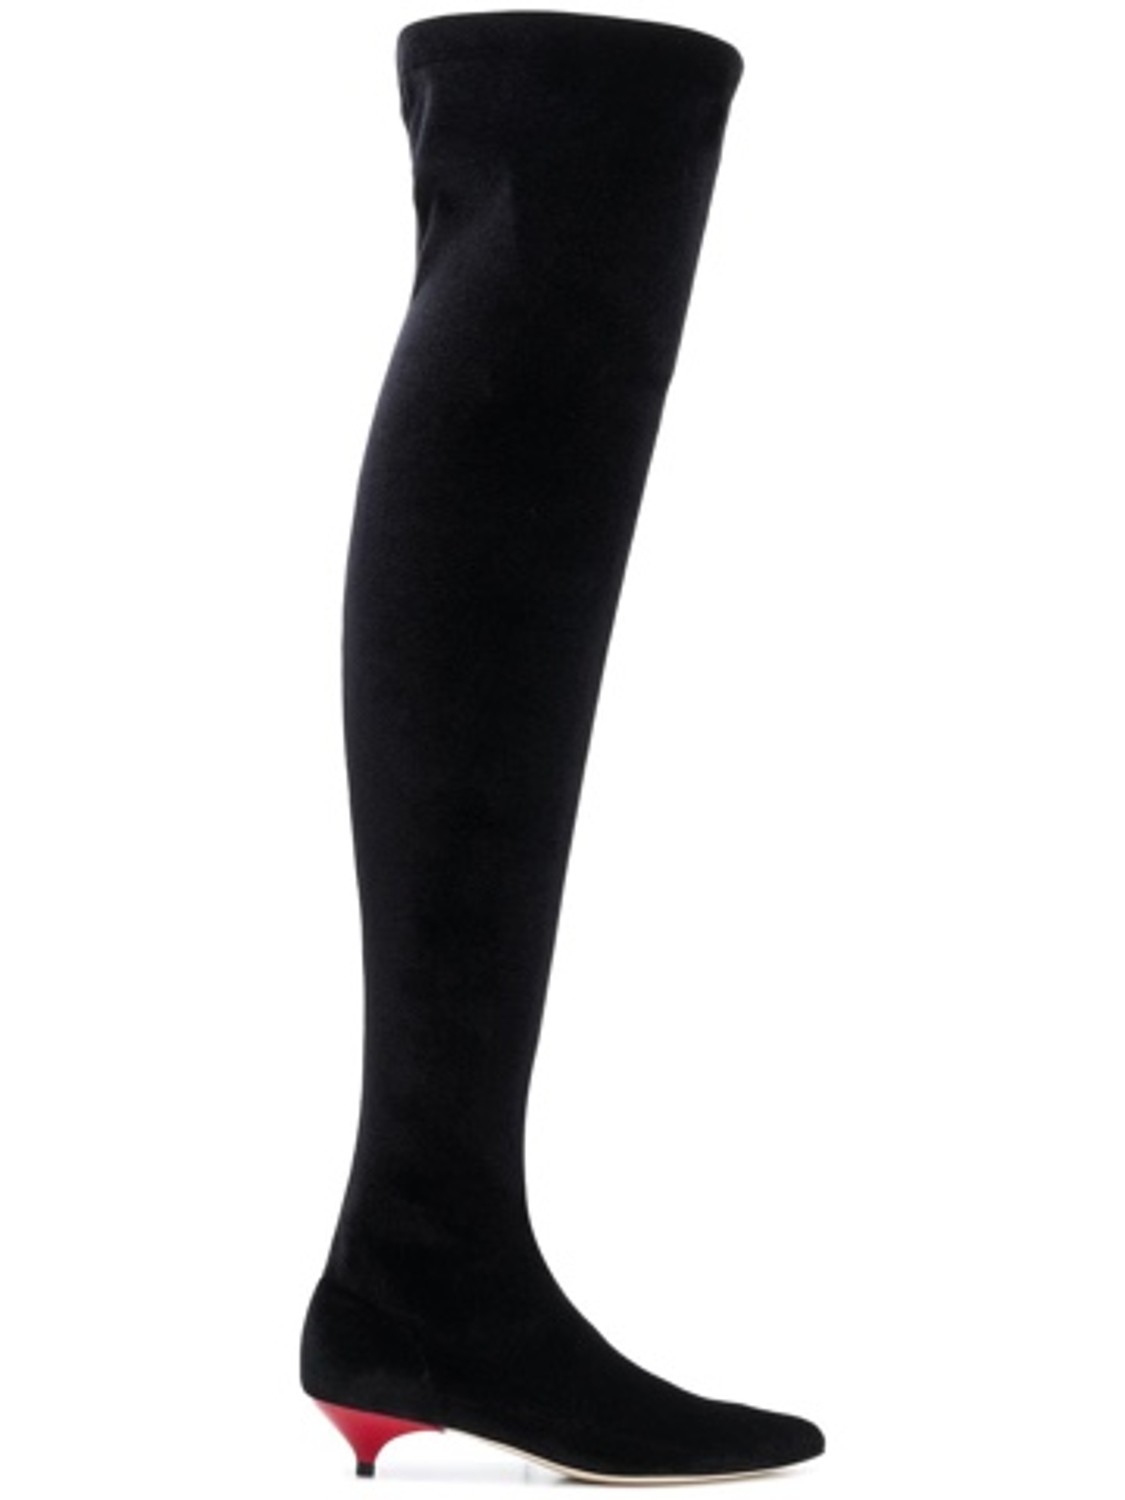 shop Gia Couture  Scarpe: Stivali Gia Couture, in tessuto tecnico, lunghezza sopra al ginocchio, tacco rosso a contrasto.

Composizione: 100% tessuto tecnico.
Tacco: 3 cm. number 1377